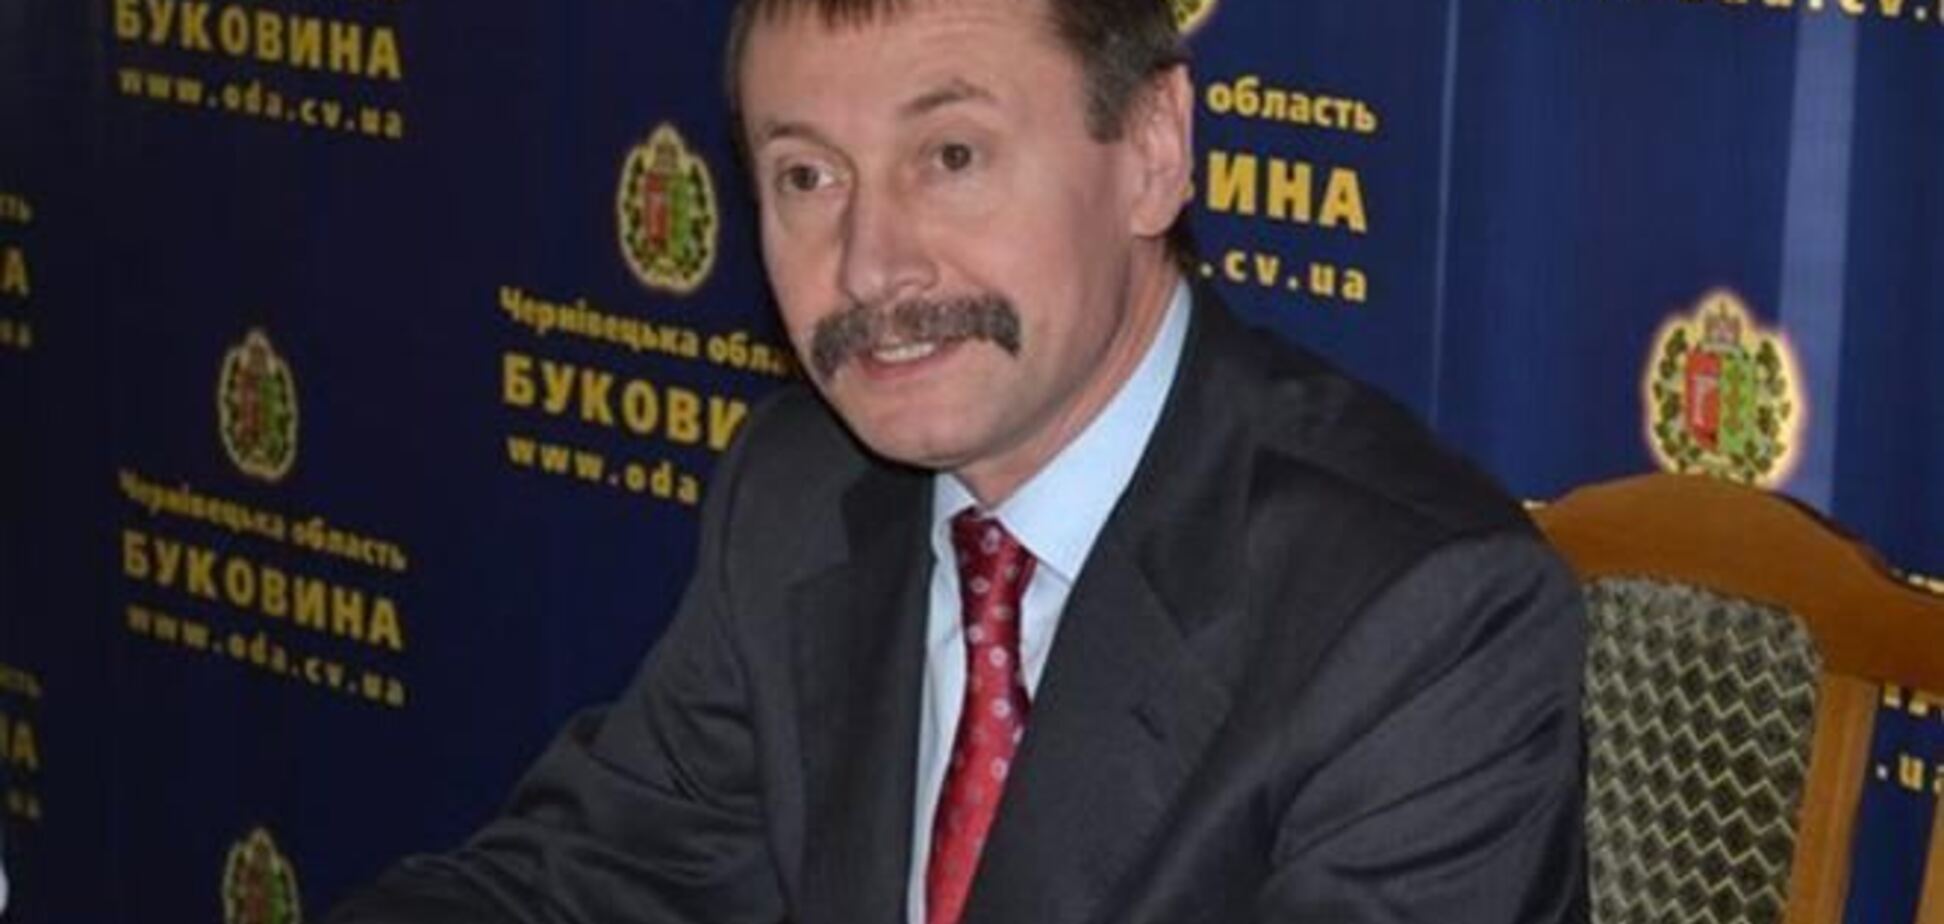 Чернівецького губернатора закидали яйцями і змусили написати заяву про відставку